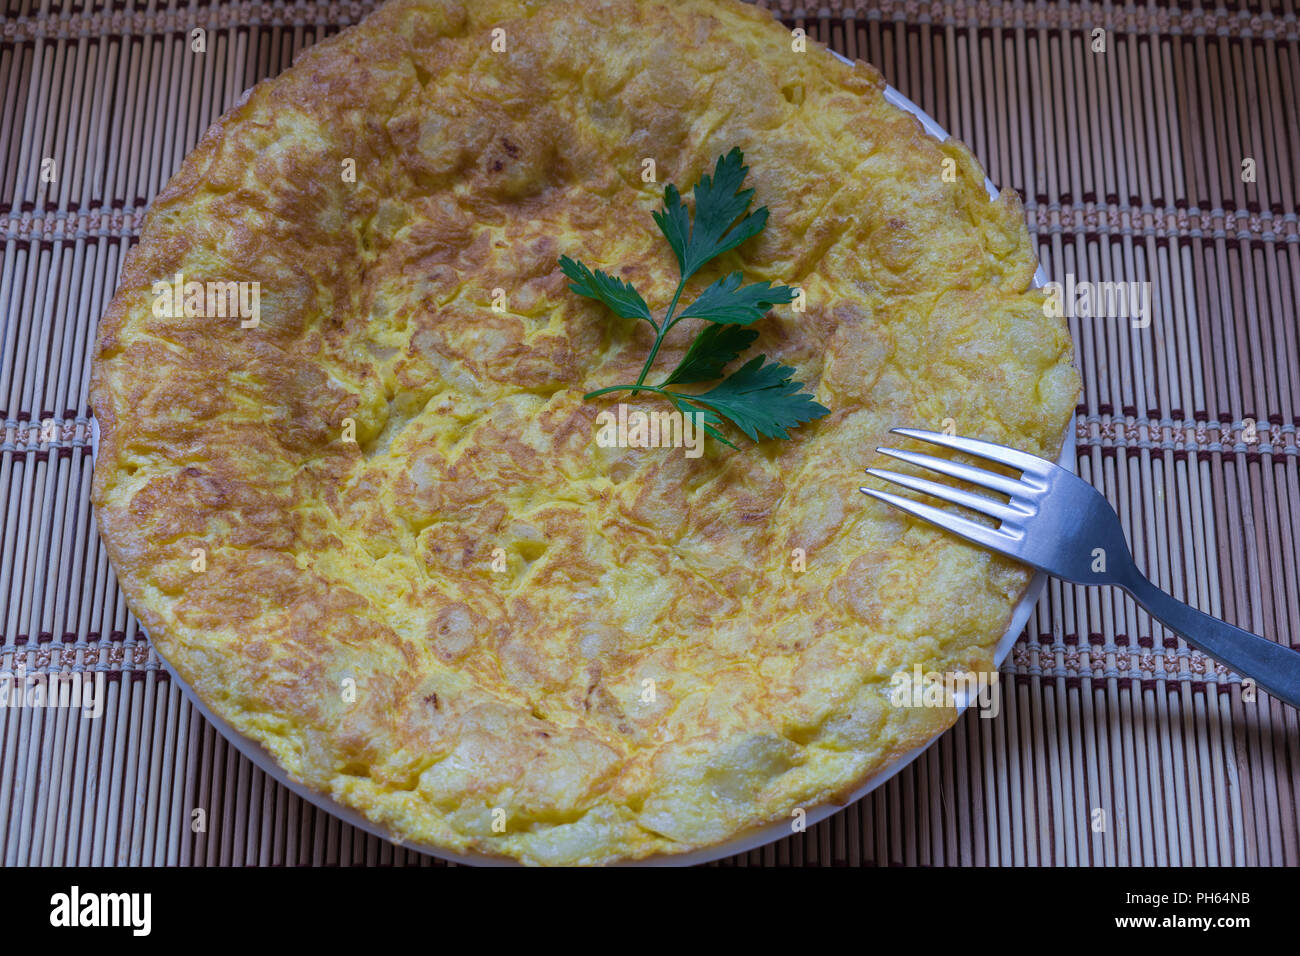 L'omelette espagnole tortilla espagnole. C'est un des plus typiques de l'Espagne Banque D'Images